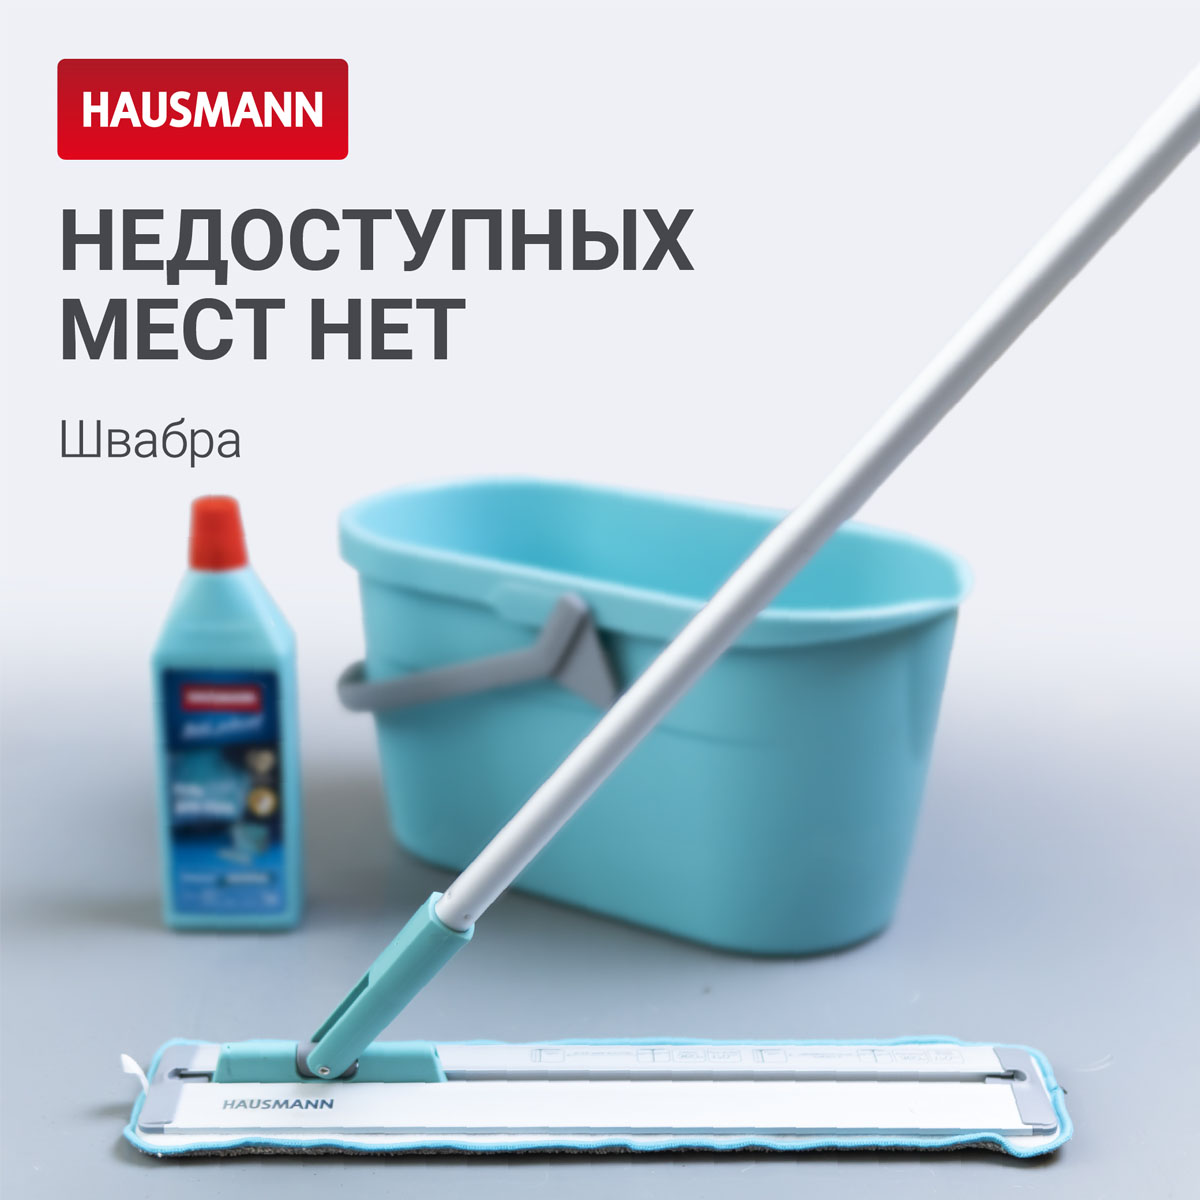 Швабра для влажной уборки Hausmann Cosmic Classic Home Slider с телескопической ручкой и слайд-механизмом швабра для влажной уборки in loran